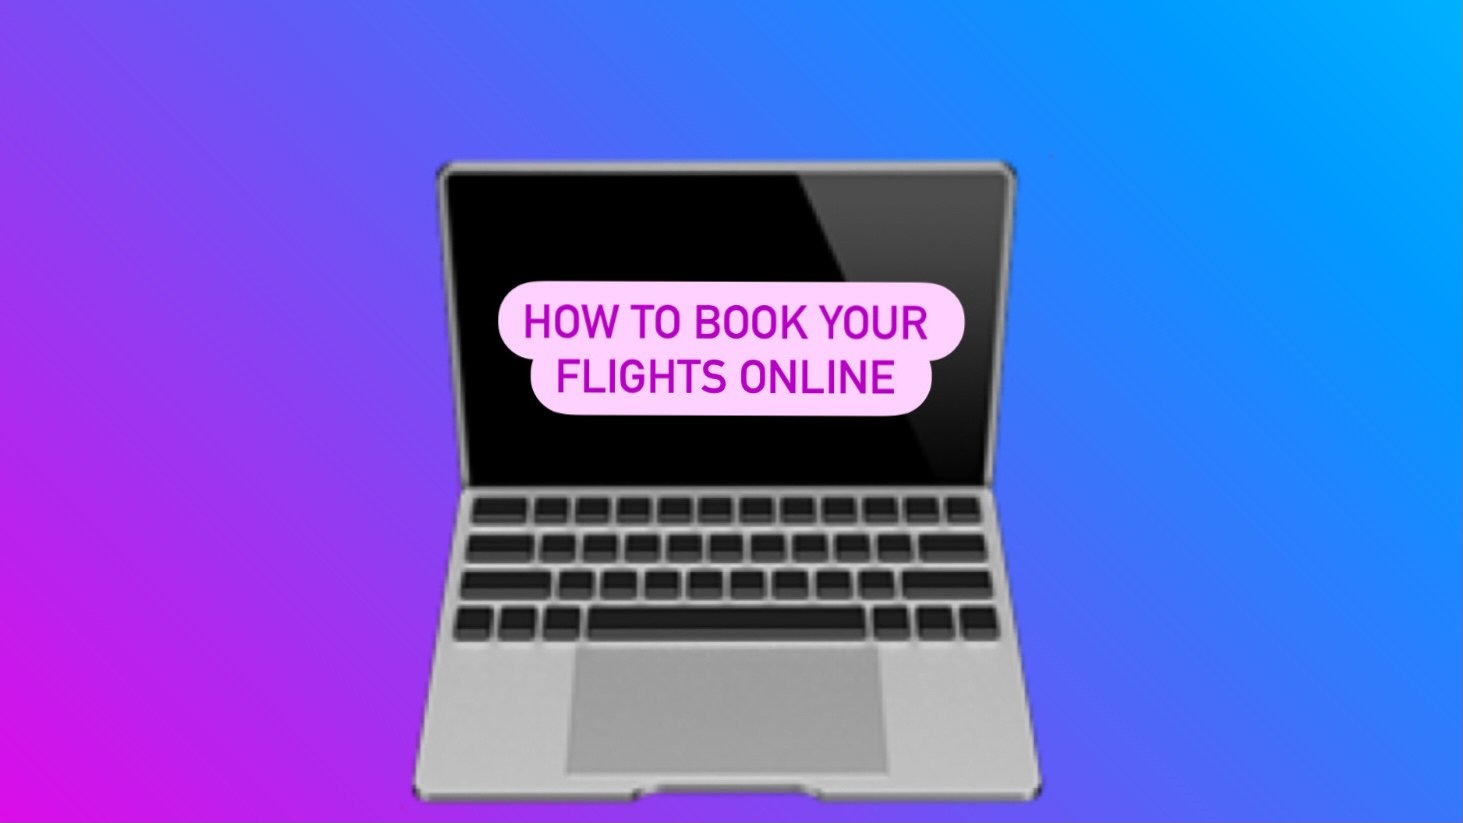 How to book flights online